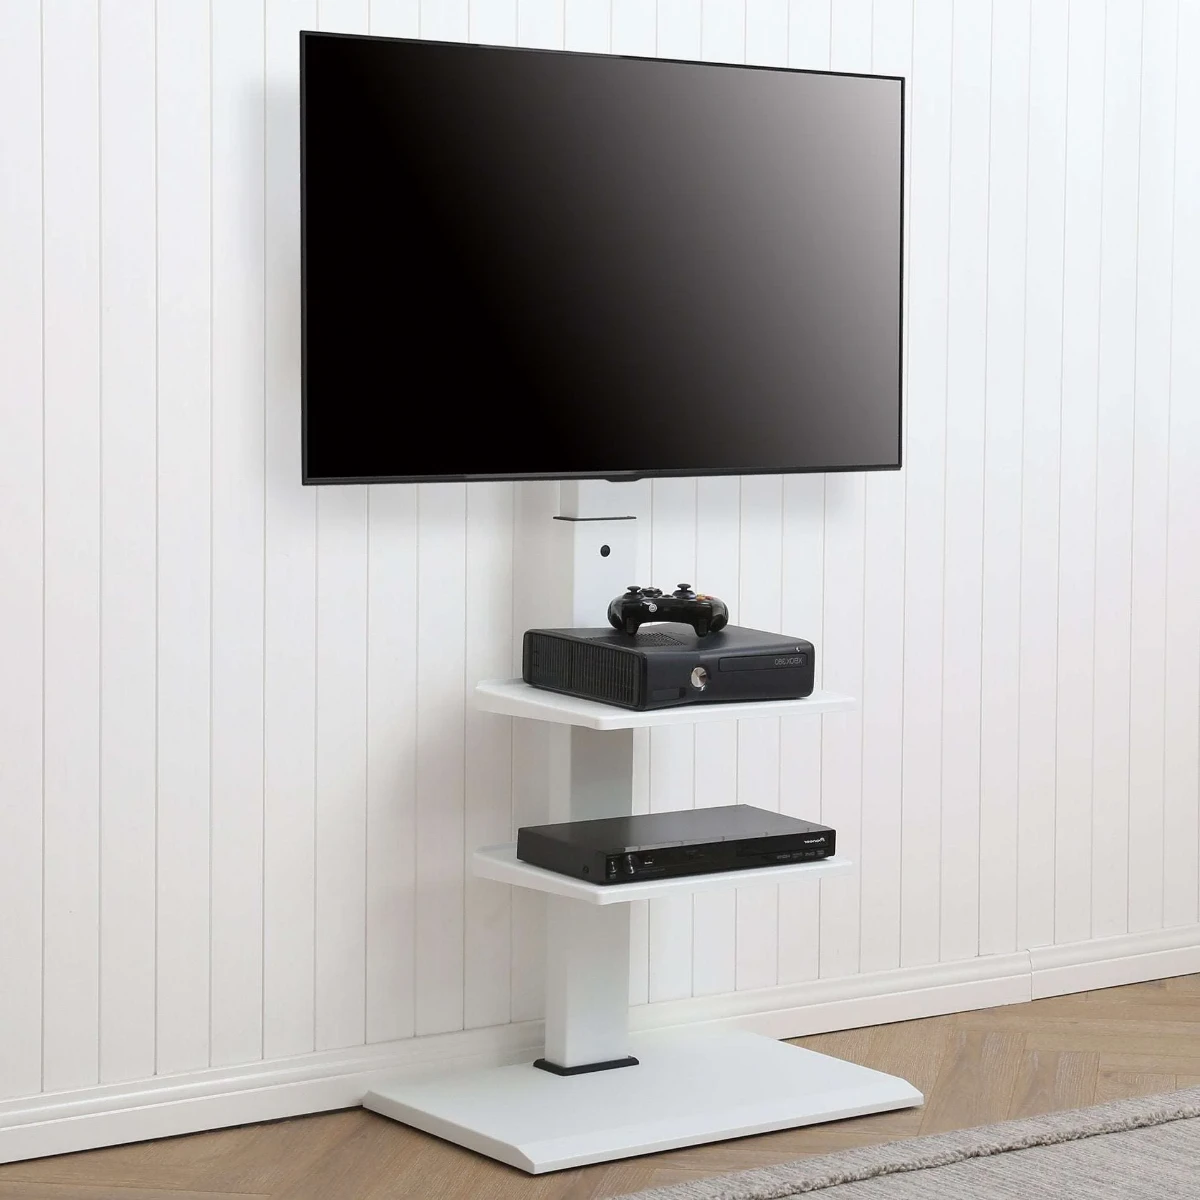 میز تلویزیون سفید با قابلیت تنظیم ارتفاع و دارای دوطبقه کوچک برای قرار گرفت وسایل برقی